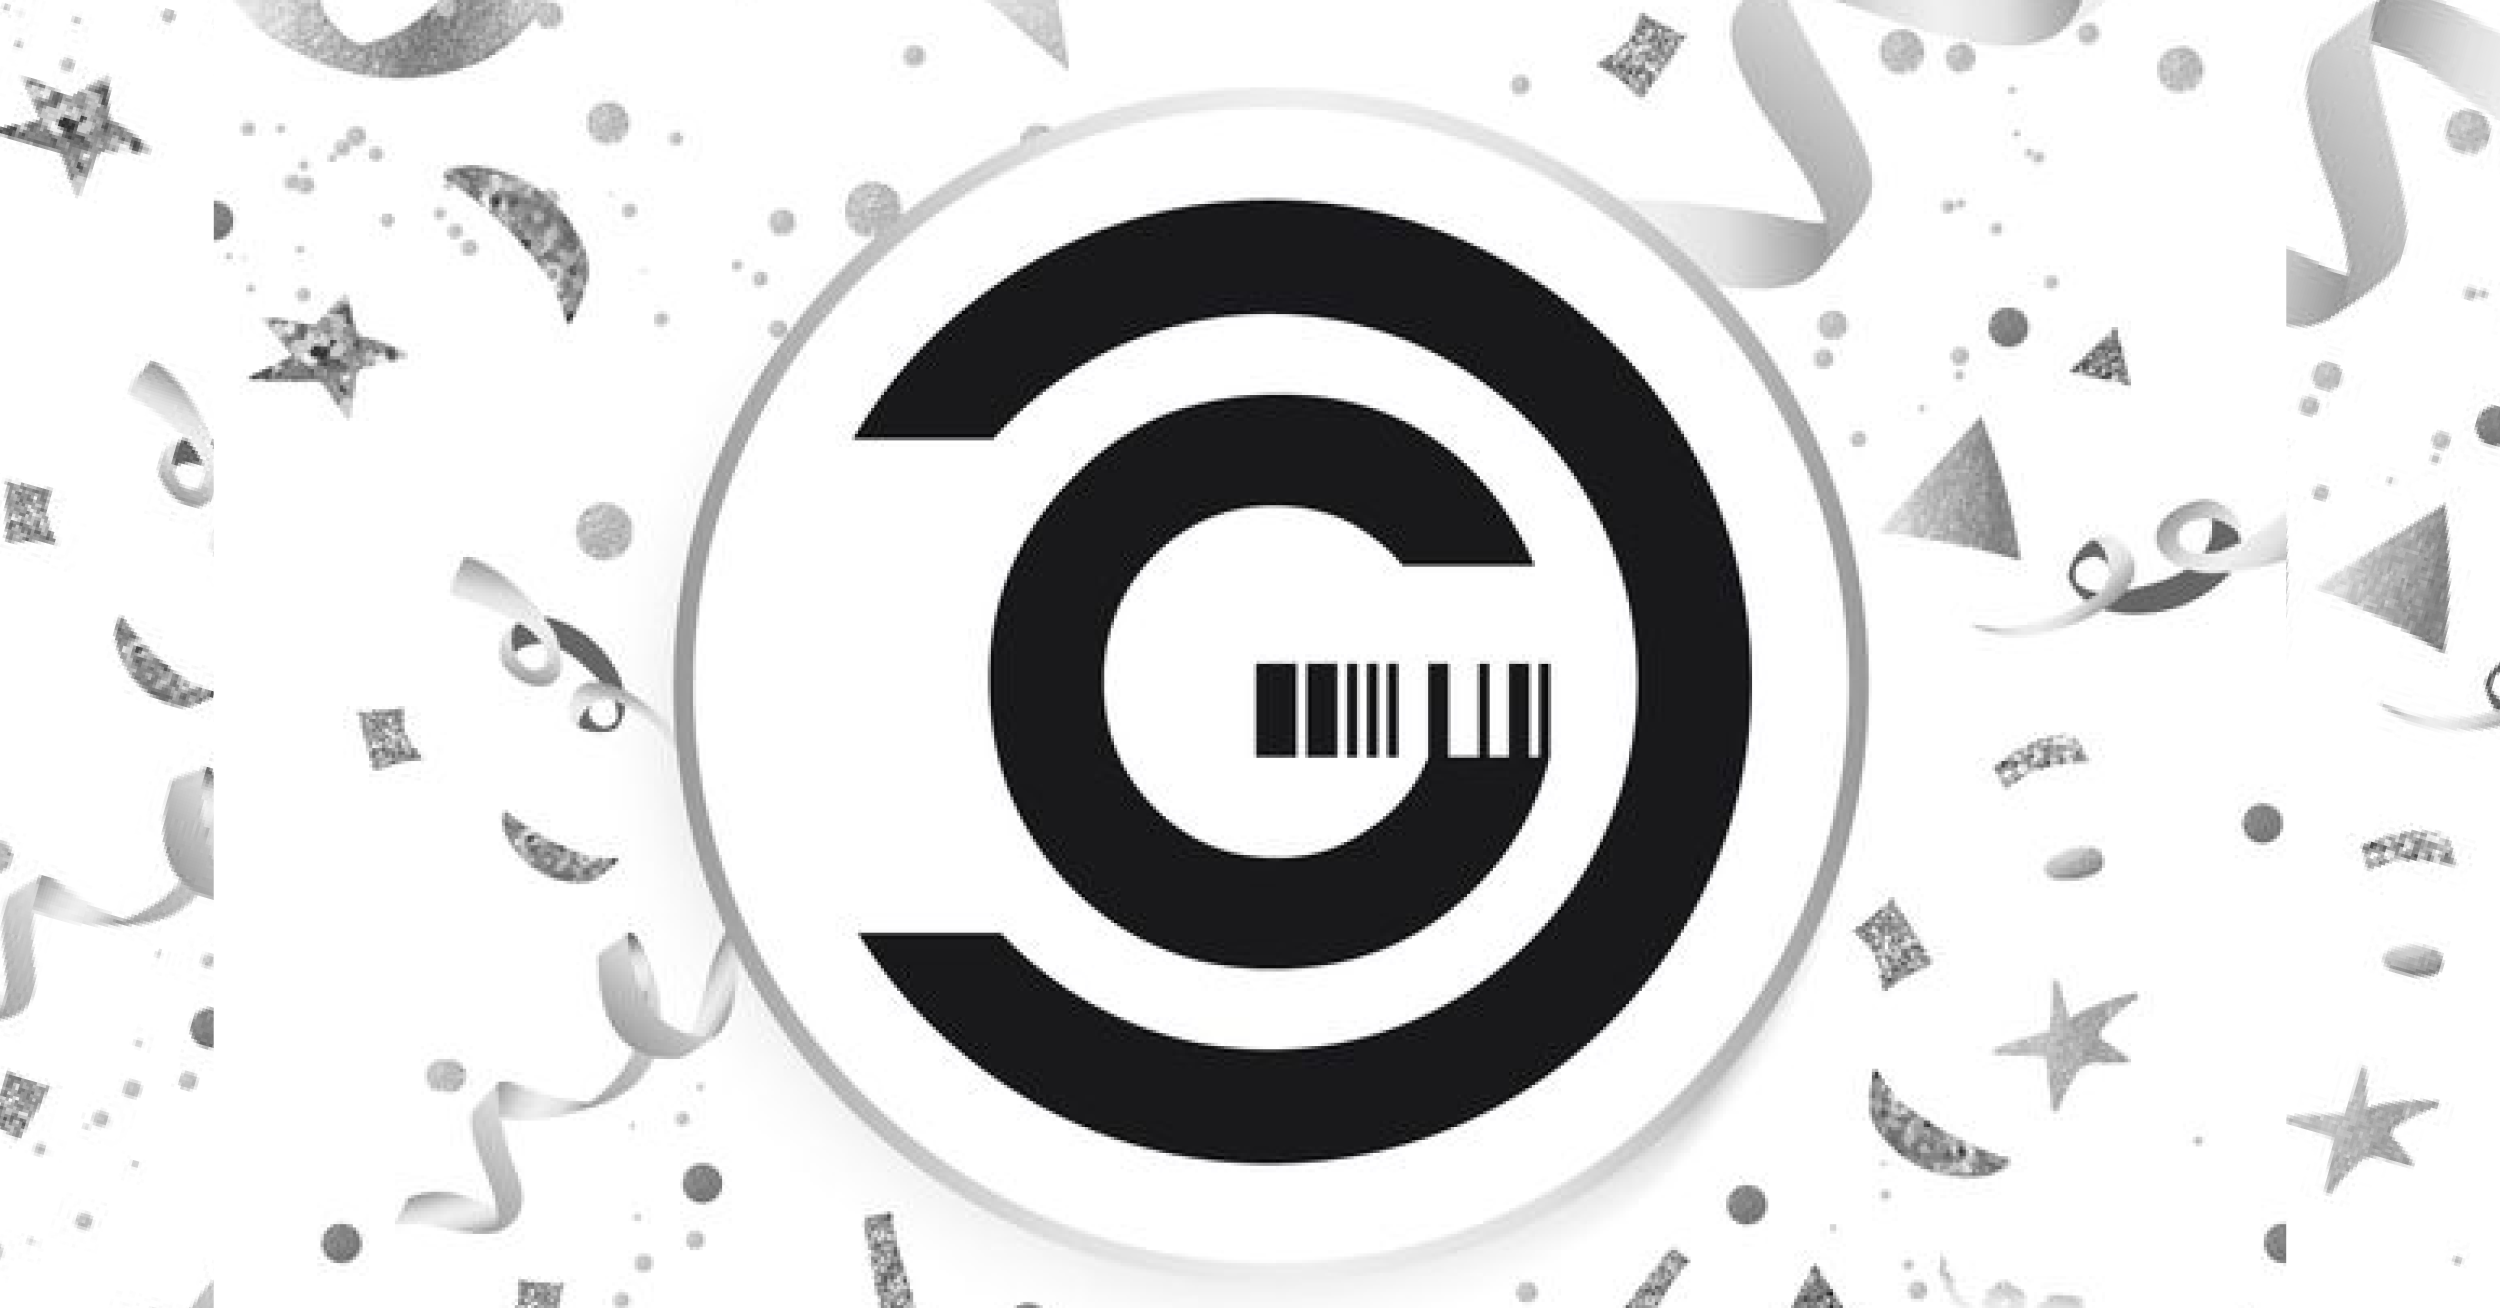 Logoelement von GATACA in einem Kreis mit Konfetti darum